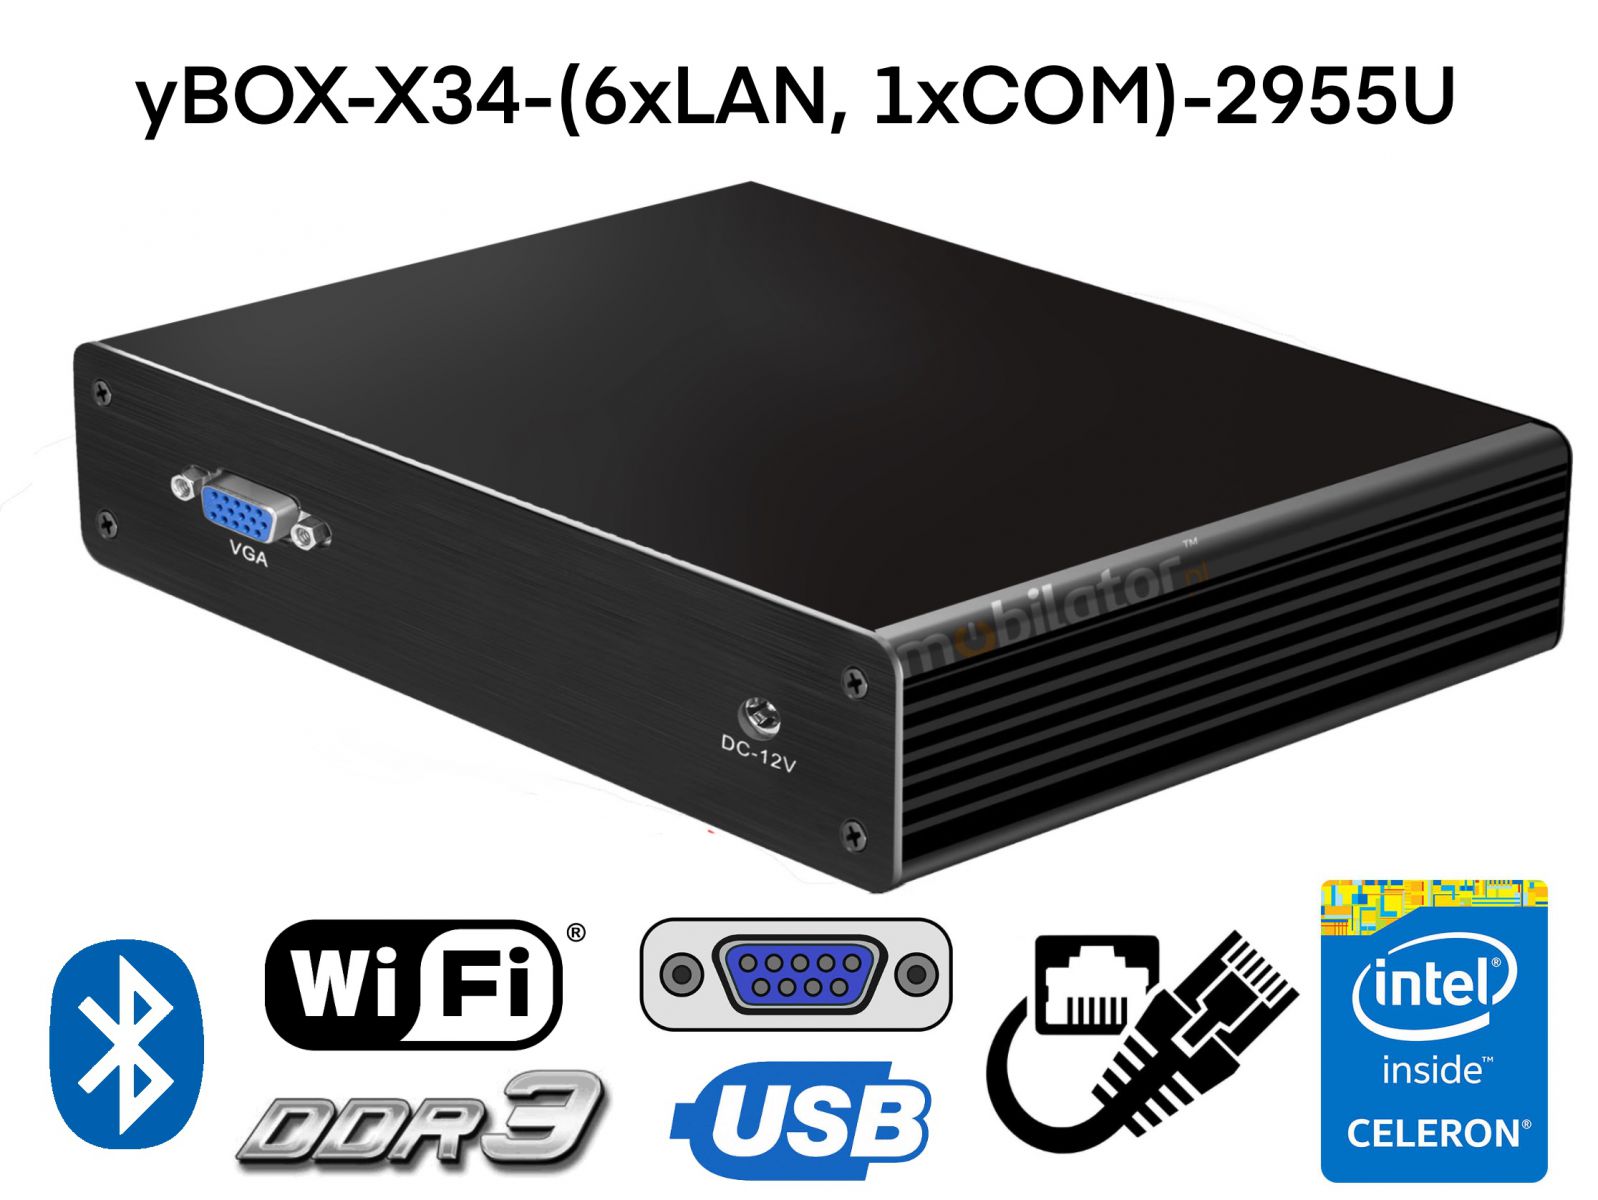 Fanless mini industrial computer to control production processes – 512GB SSD, WiFi, Bluetooth – MiniPC yBOX-X34-(6xLAN, 1xCOM)-2955U v.5